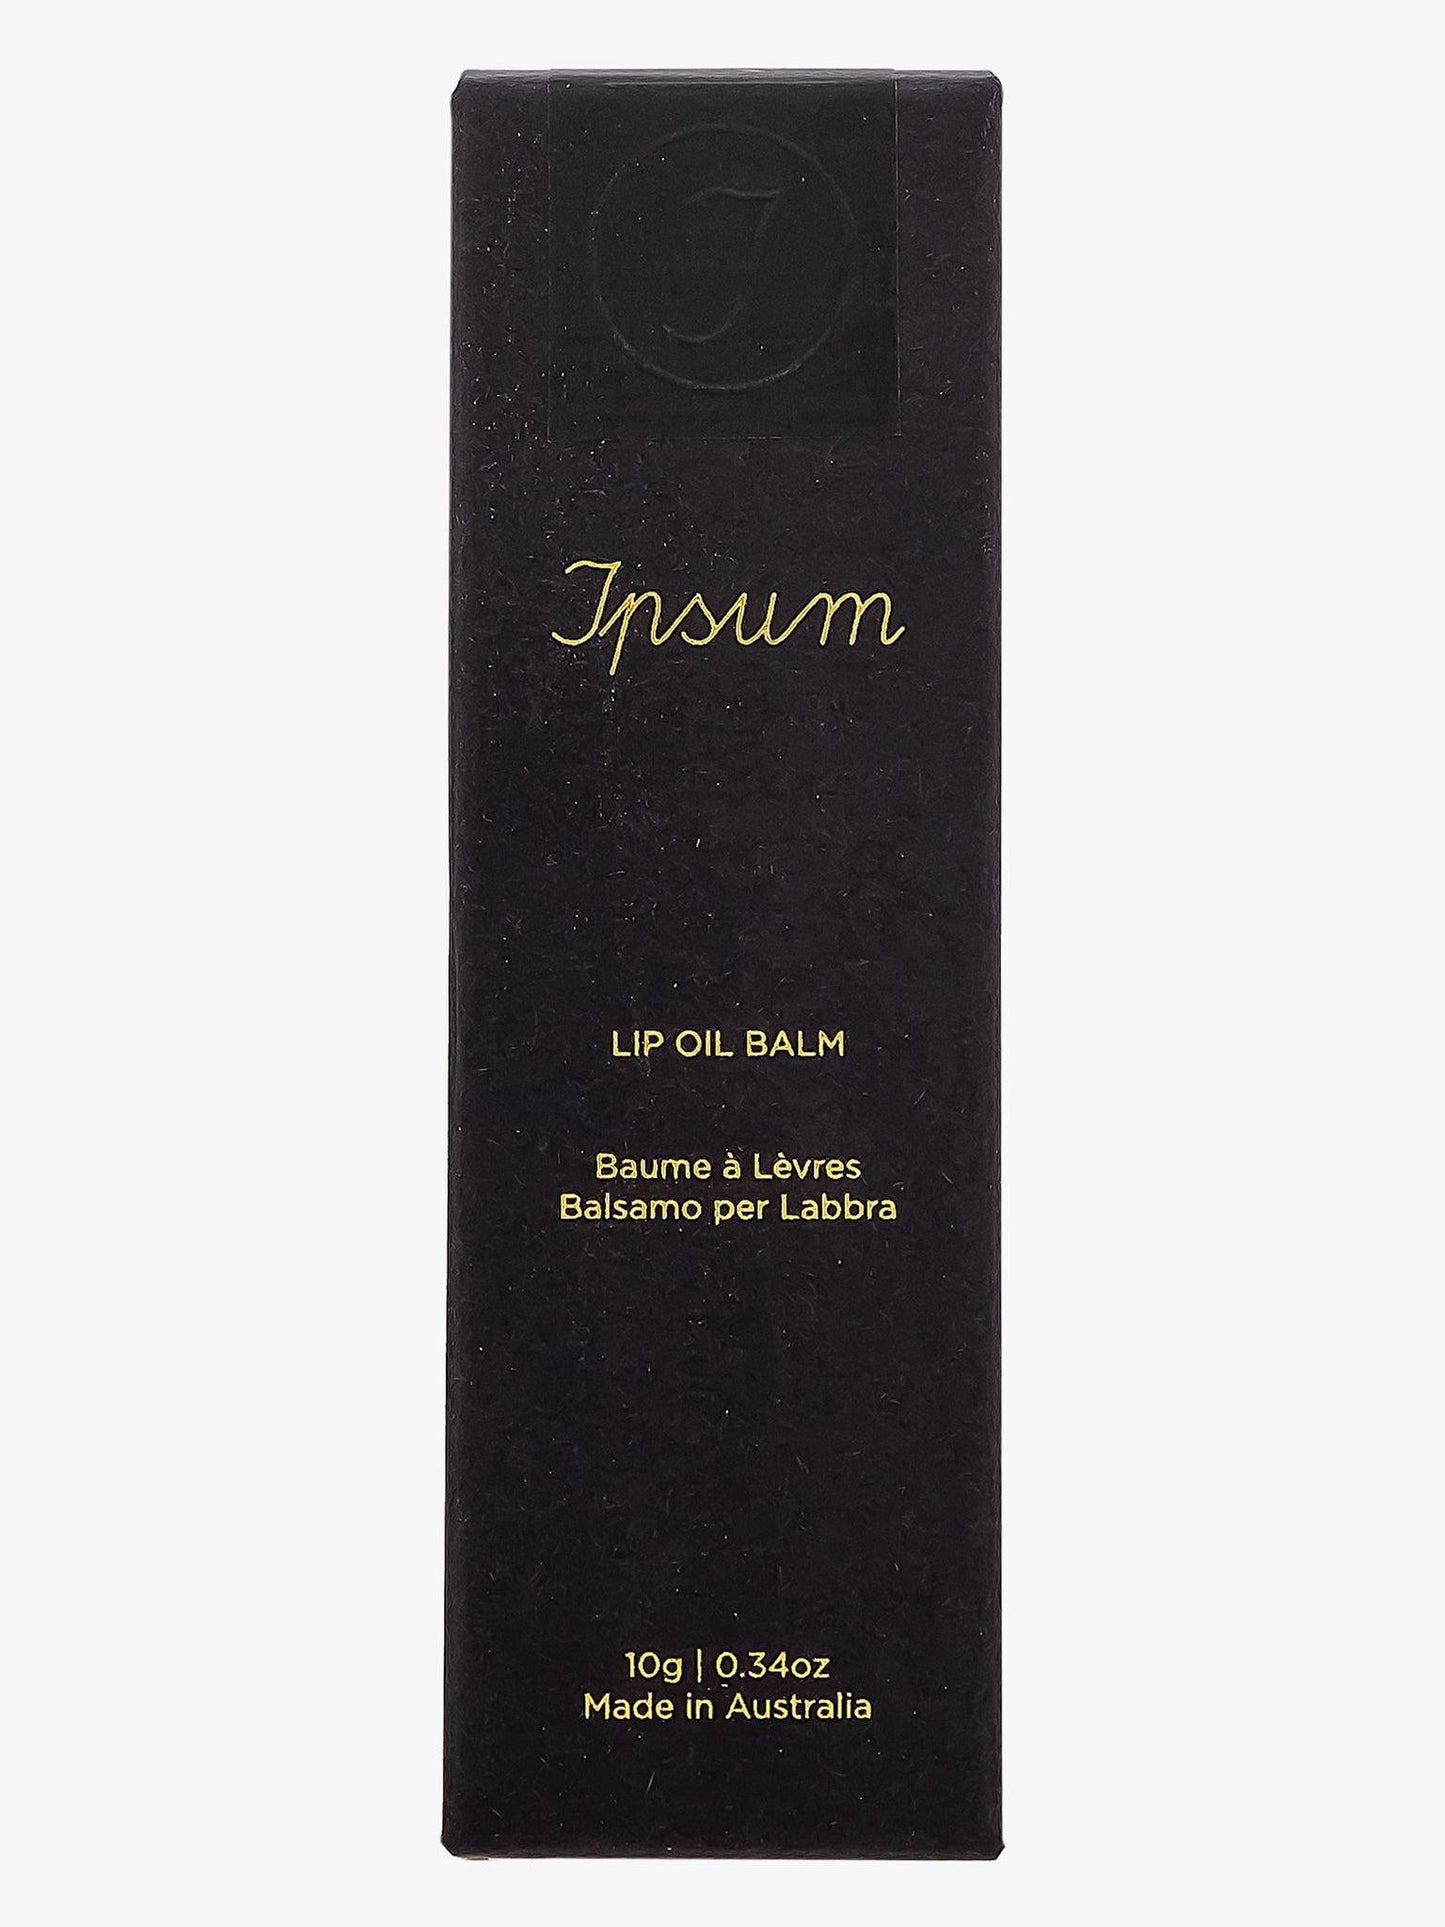 Ipsum Lip Oil Balm Tube 10g - APODEP.com